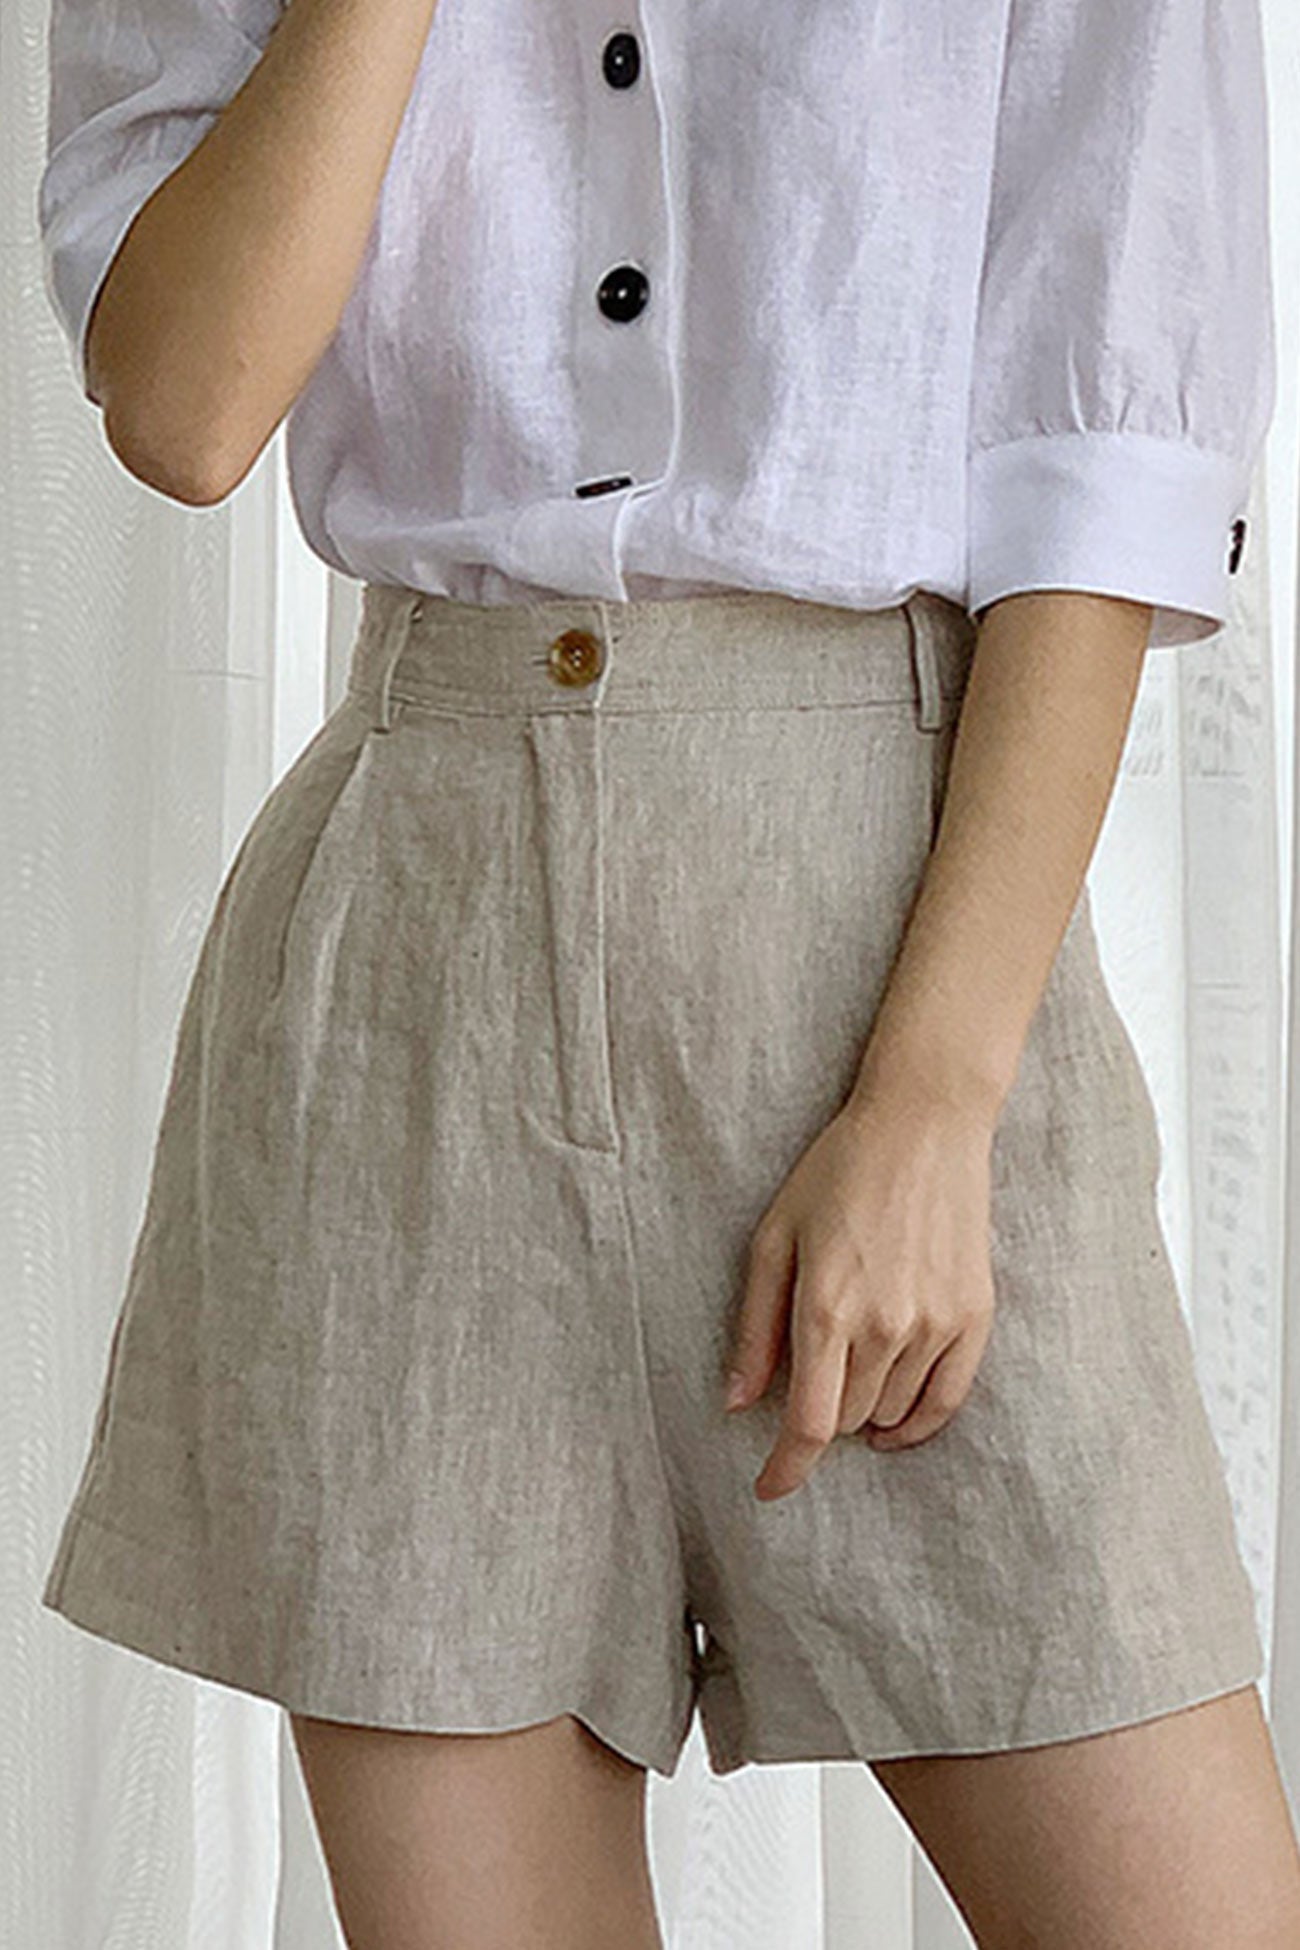 Solid Linen High Waist Shorts